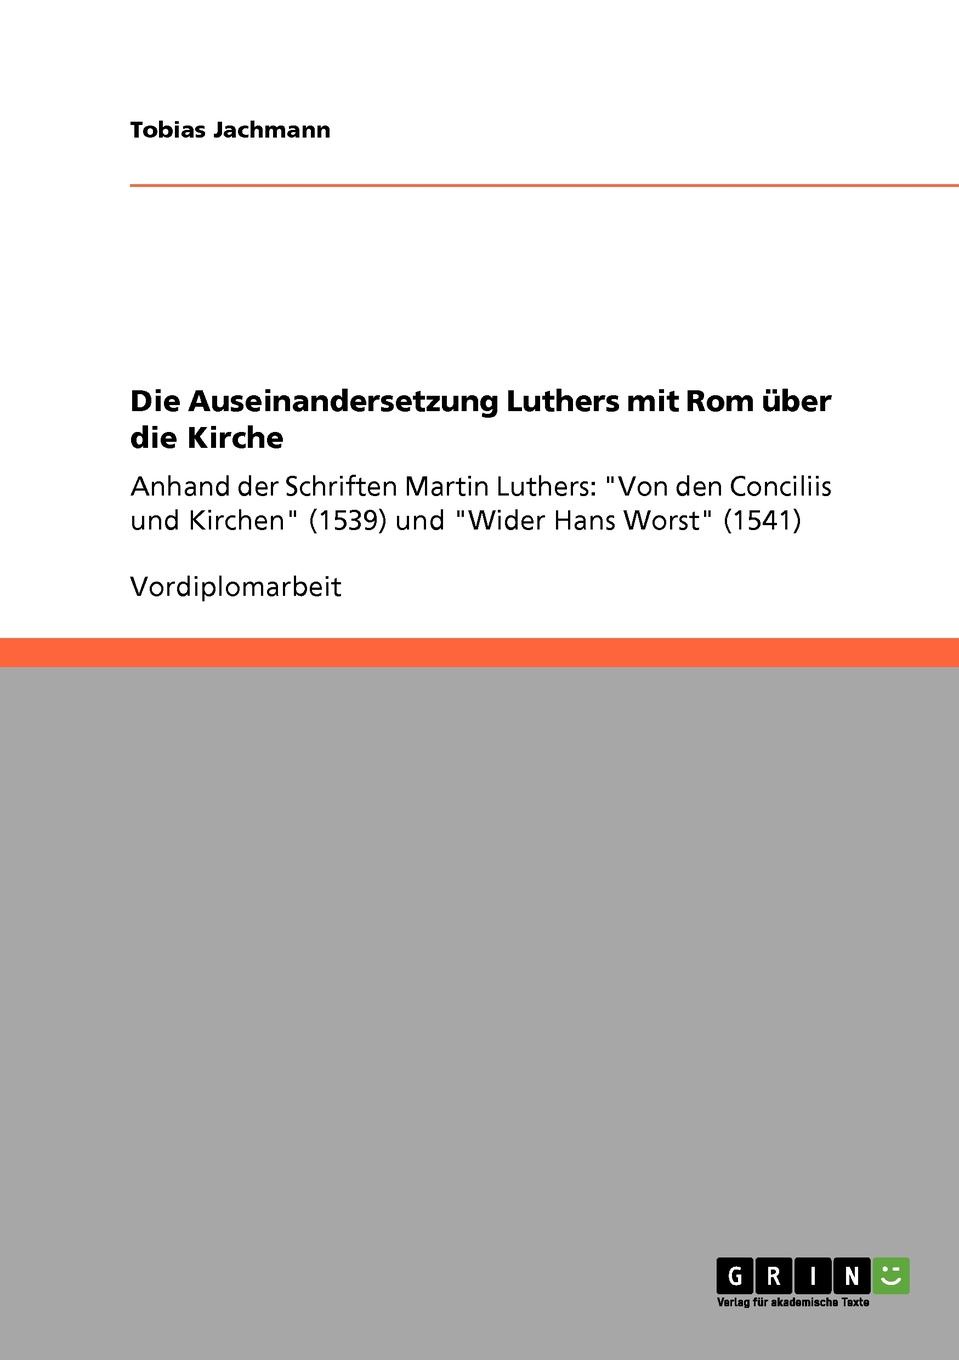 Die Auseinandersetzung Luthers mit Rom uber die Kirche